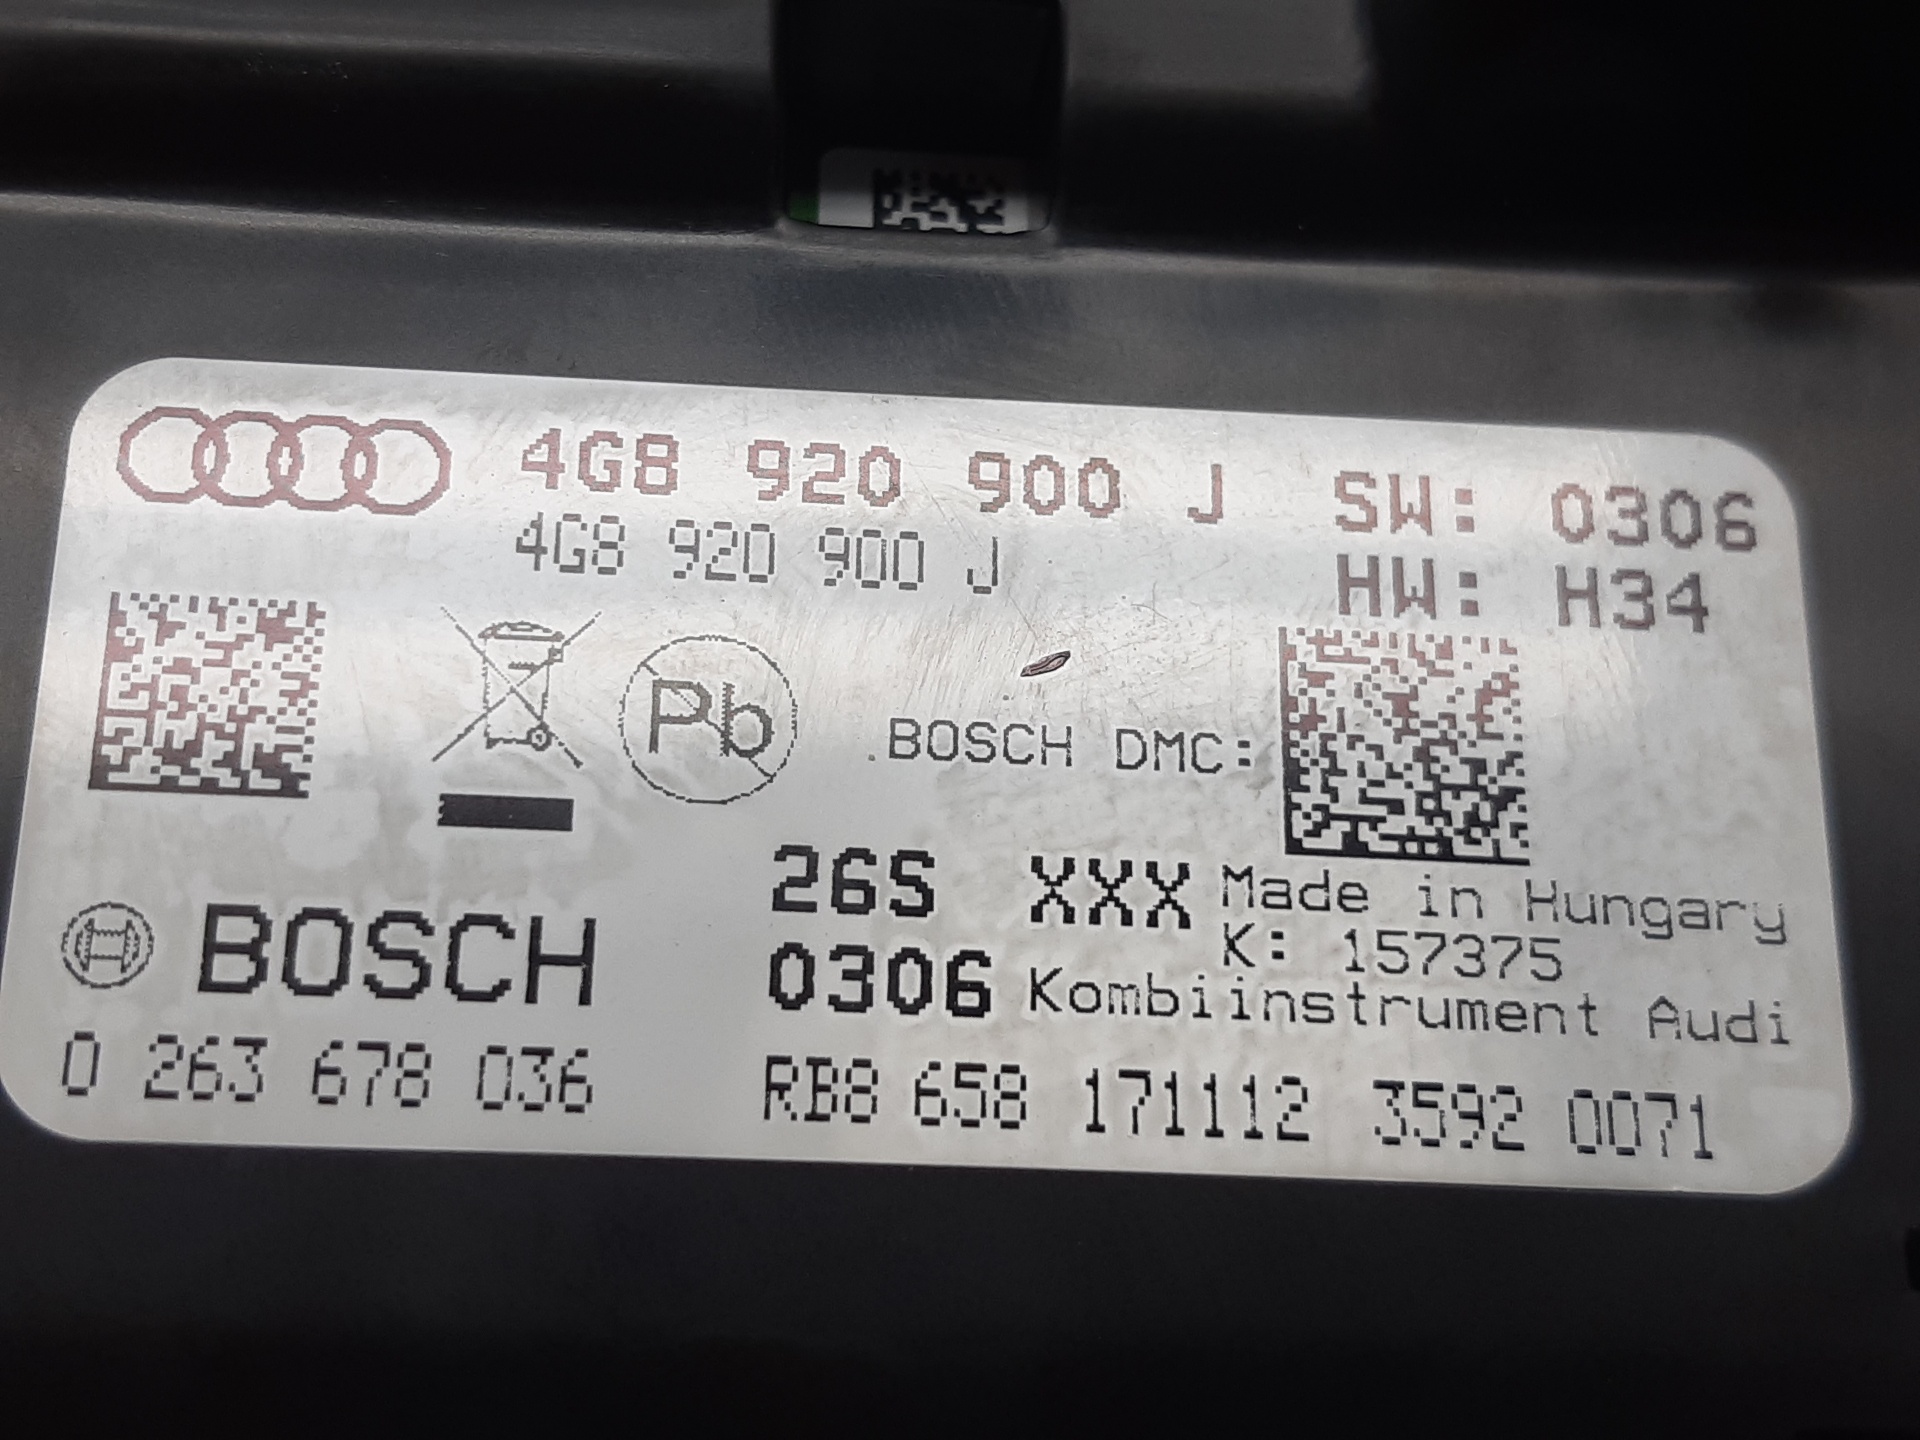 AUDI A6 allroad C7 (2012-2019) Speedometer 4G8920900J 24930327